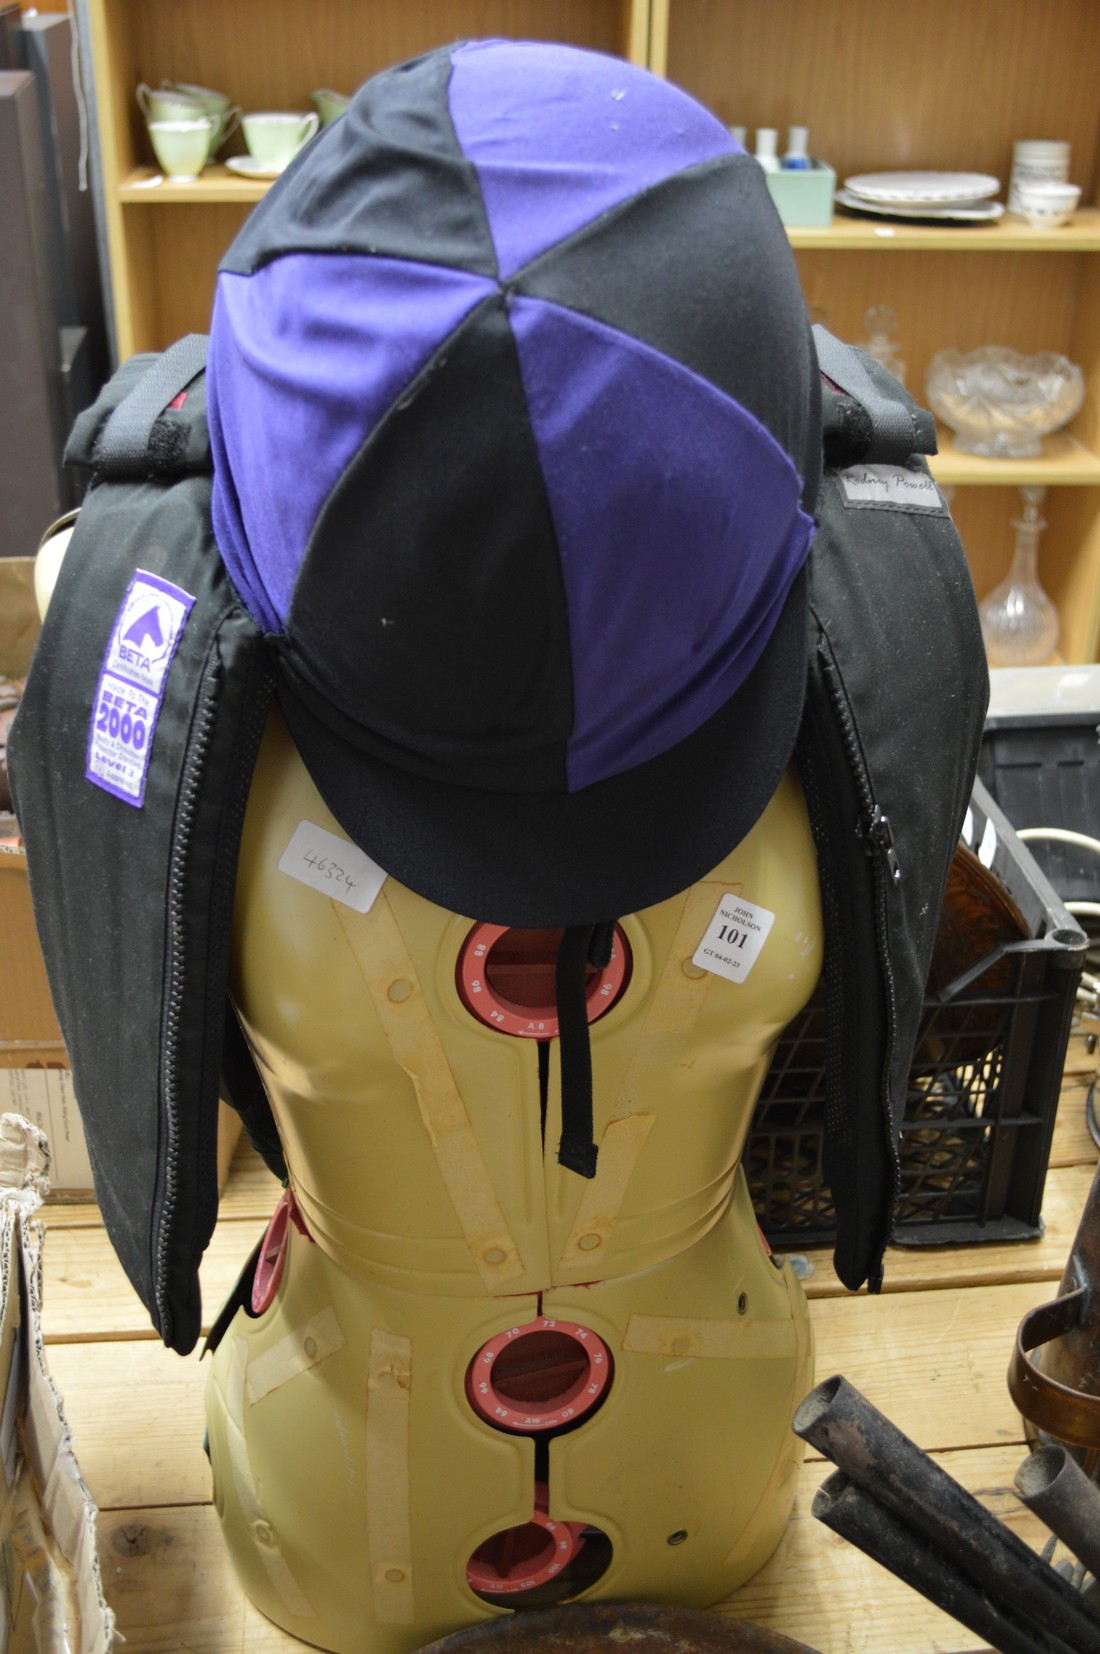 A jockeys waistcoat and hat.